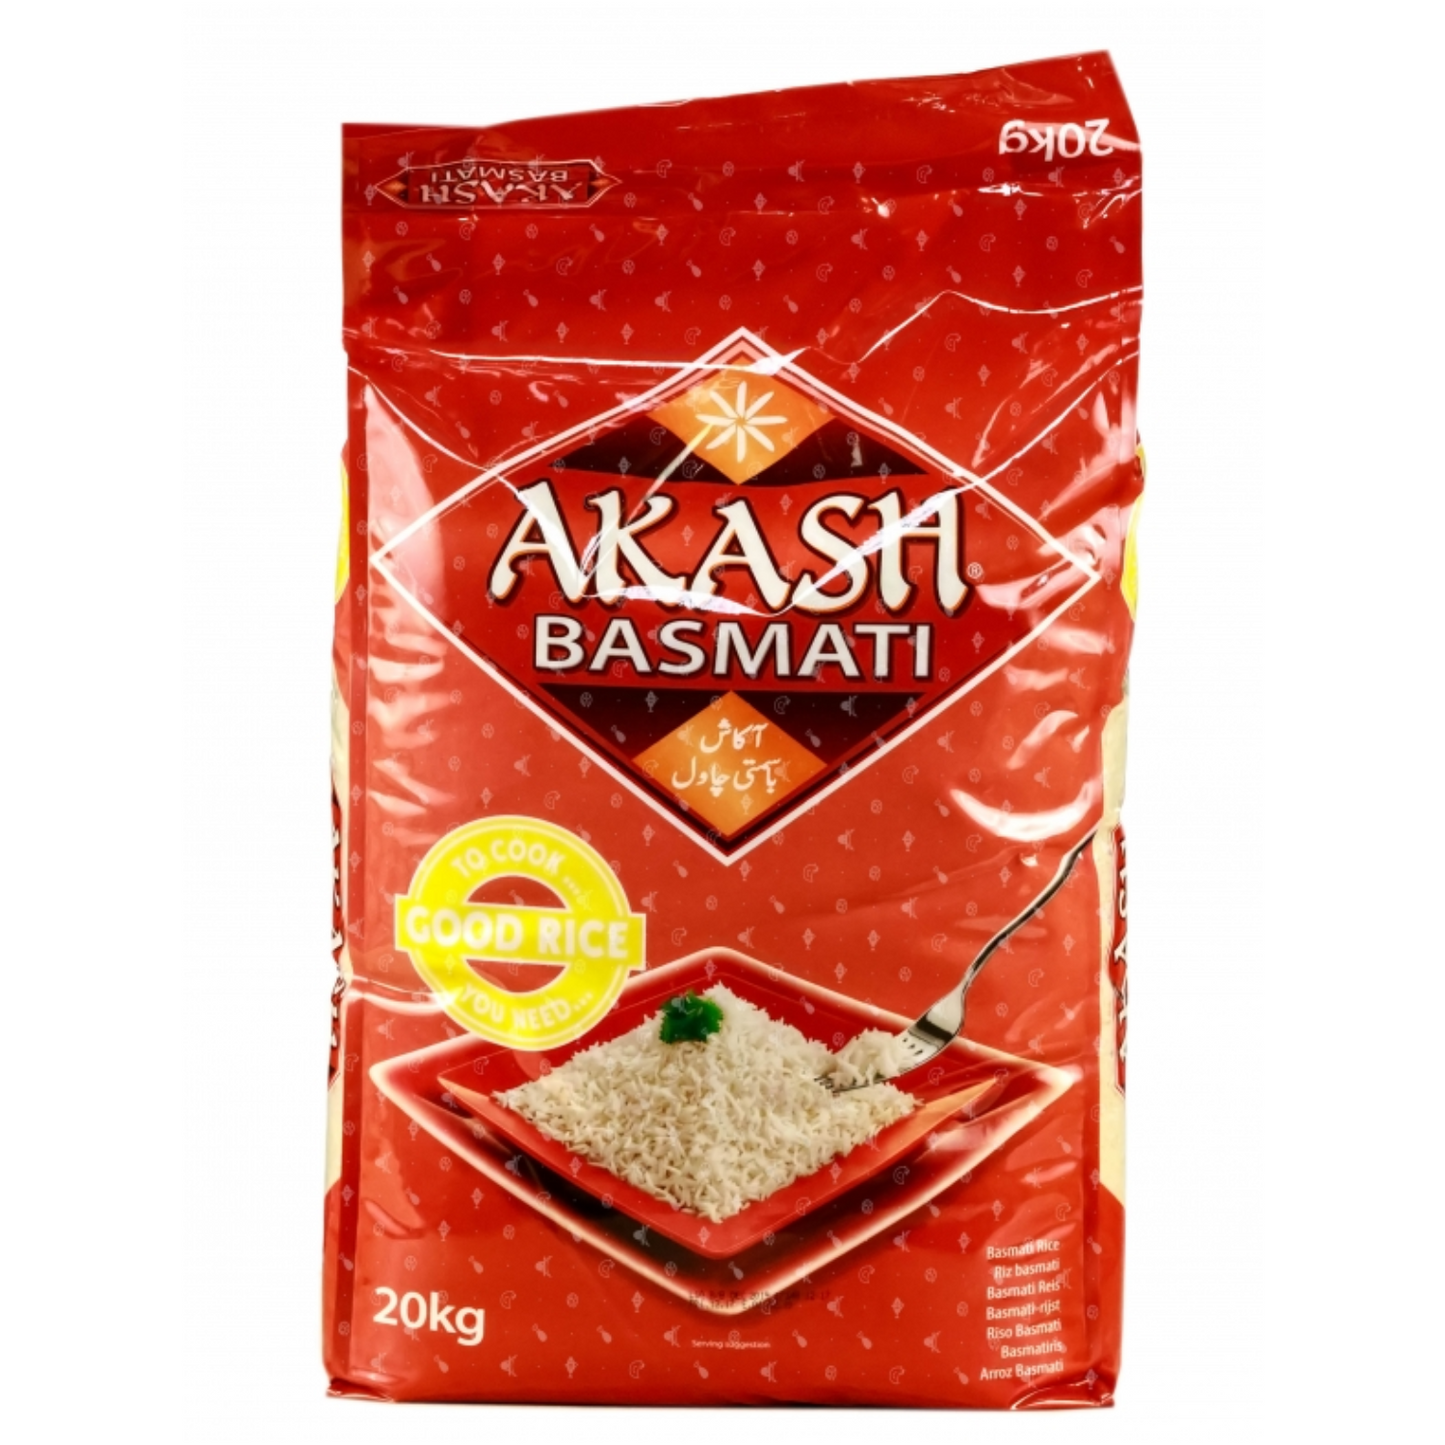 Akash Basmati Rice 20kg - OFFER